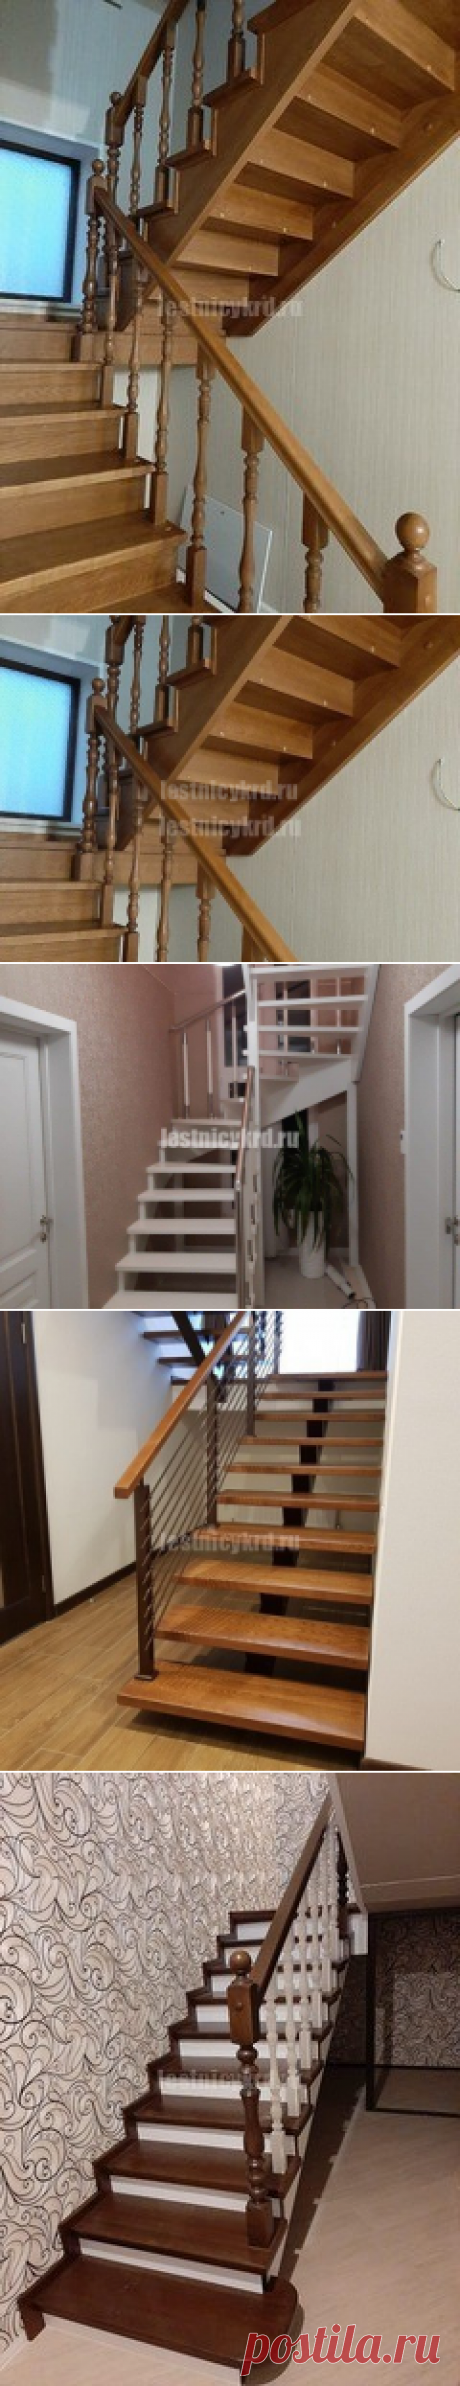 Деревянные лестницы на косоурах закрытого и открытого типа - Лестницы Краснодара